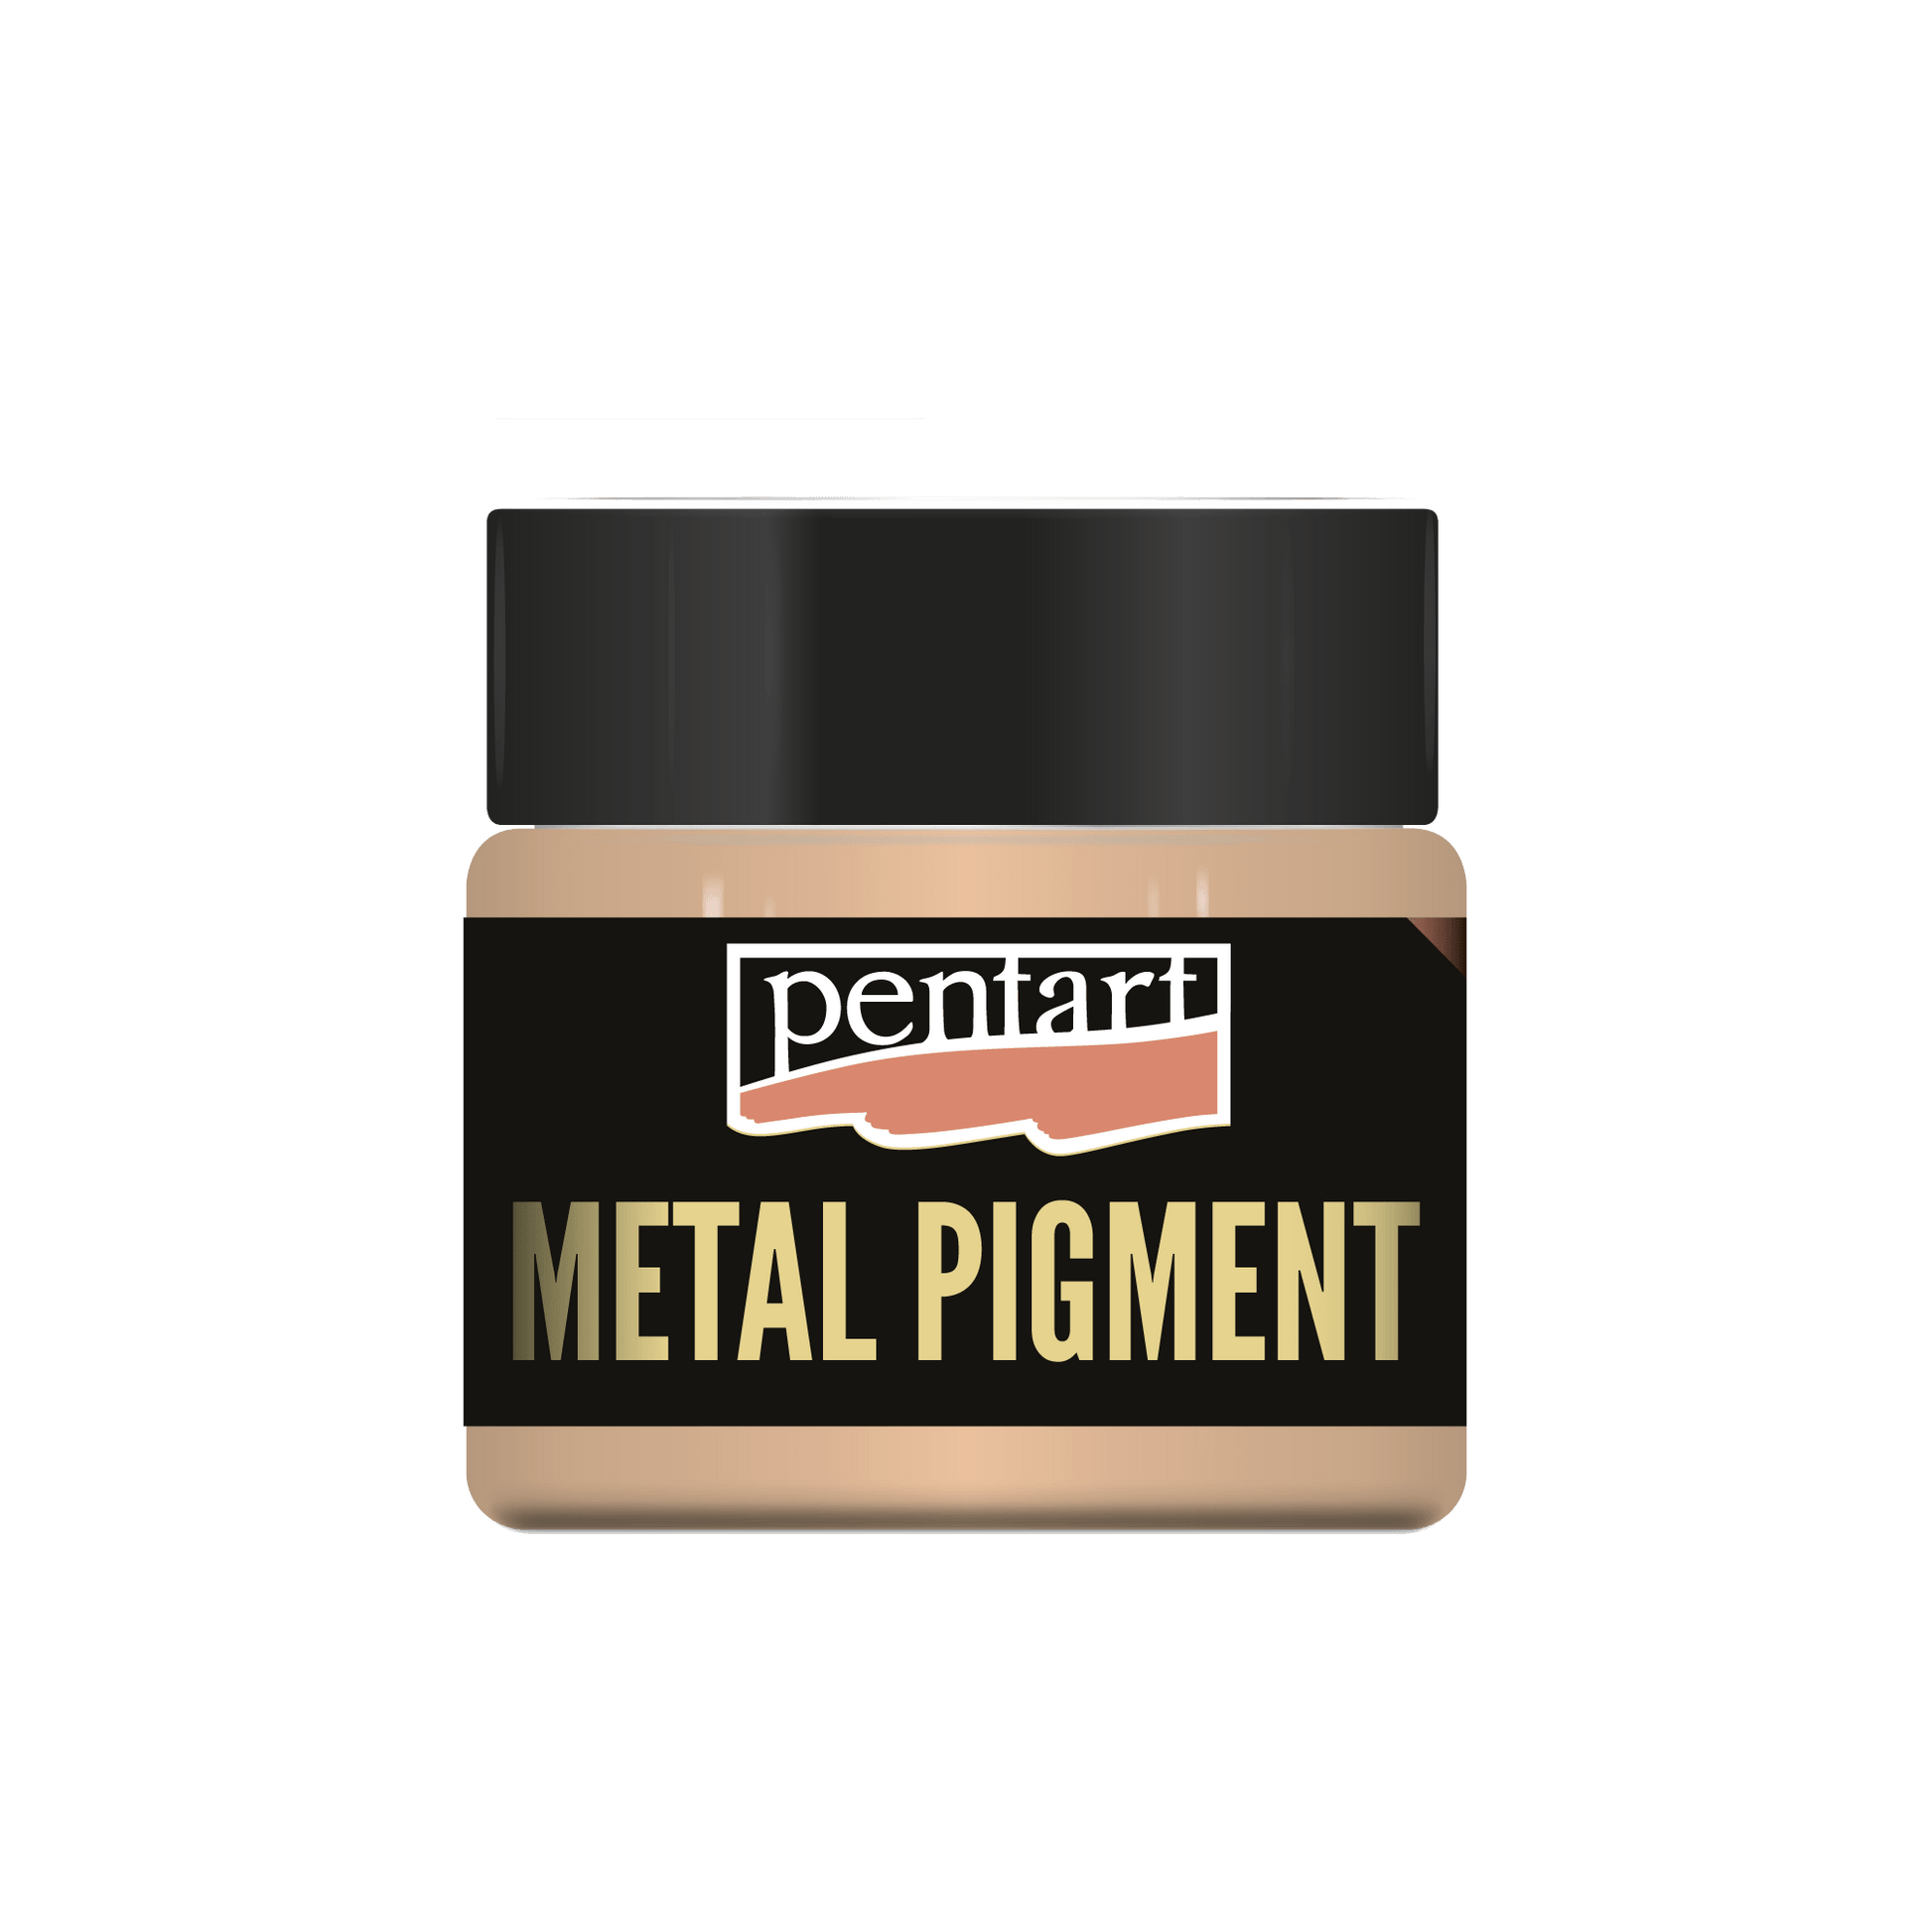 Pentart Metal Pigment Powder - Rose Gold - Rustic River Home